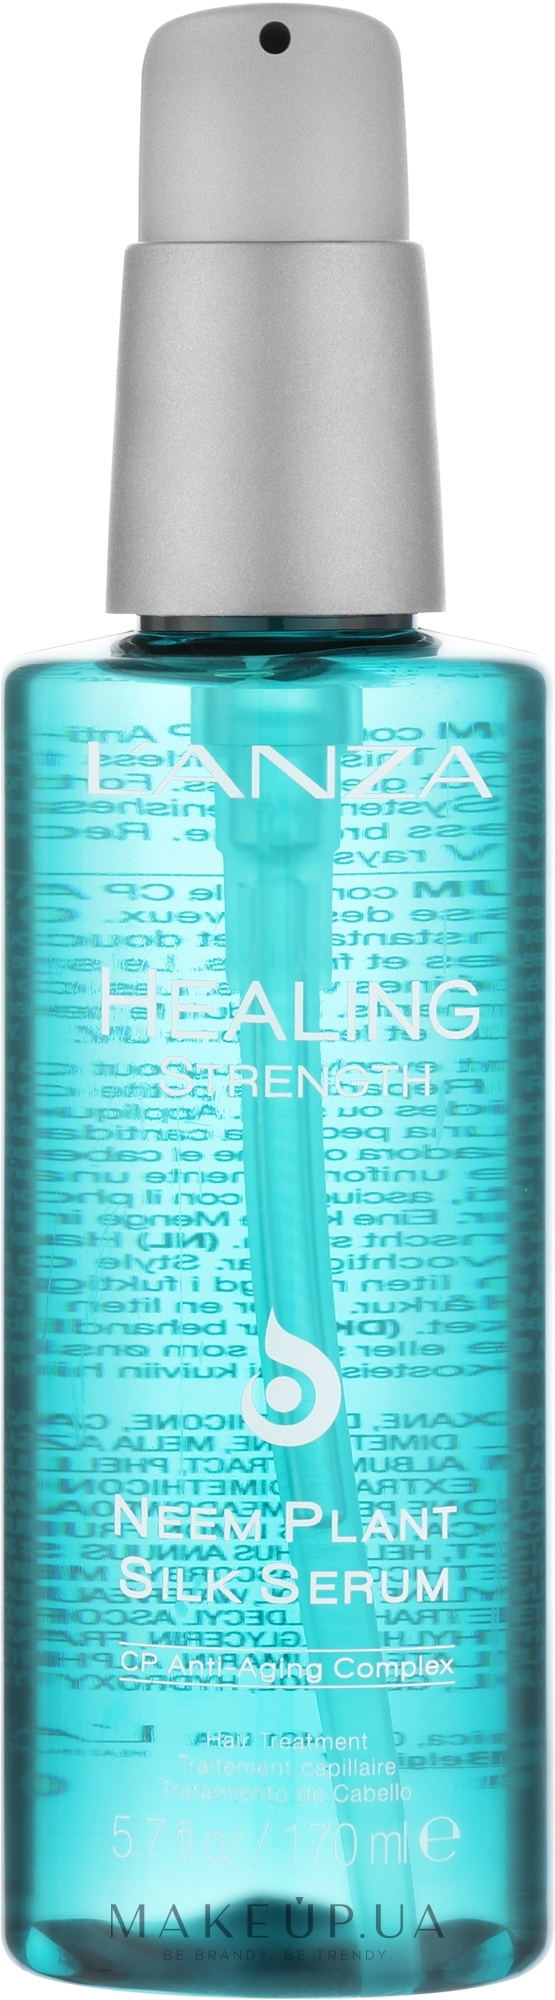 Лікувальна сироватка - L'anza Healing Strength Neem Plant Silk Serum — фото 100ml